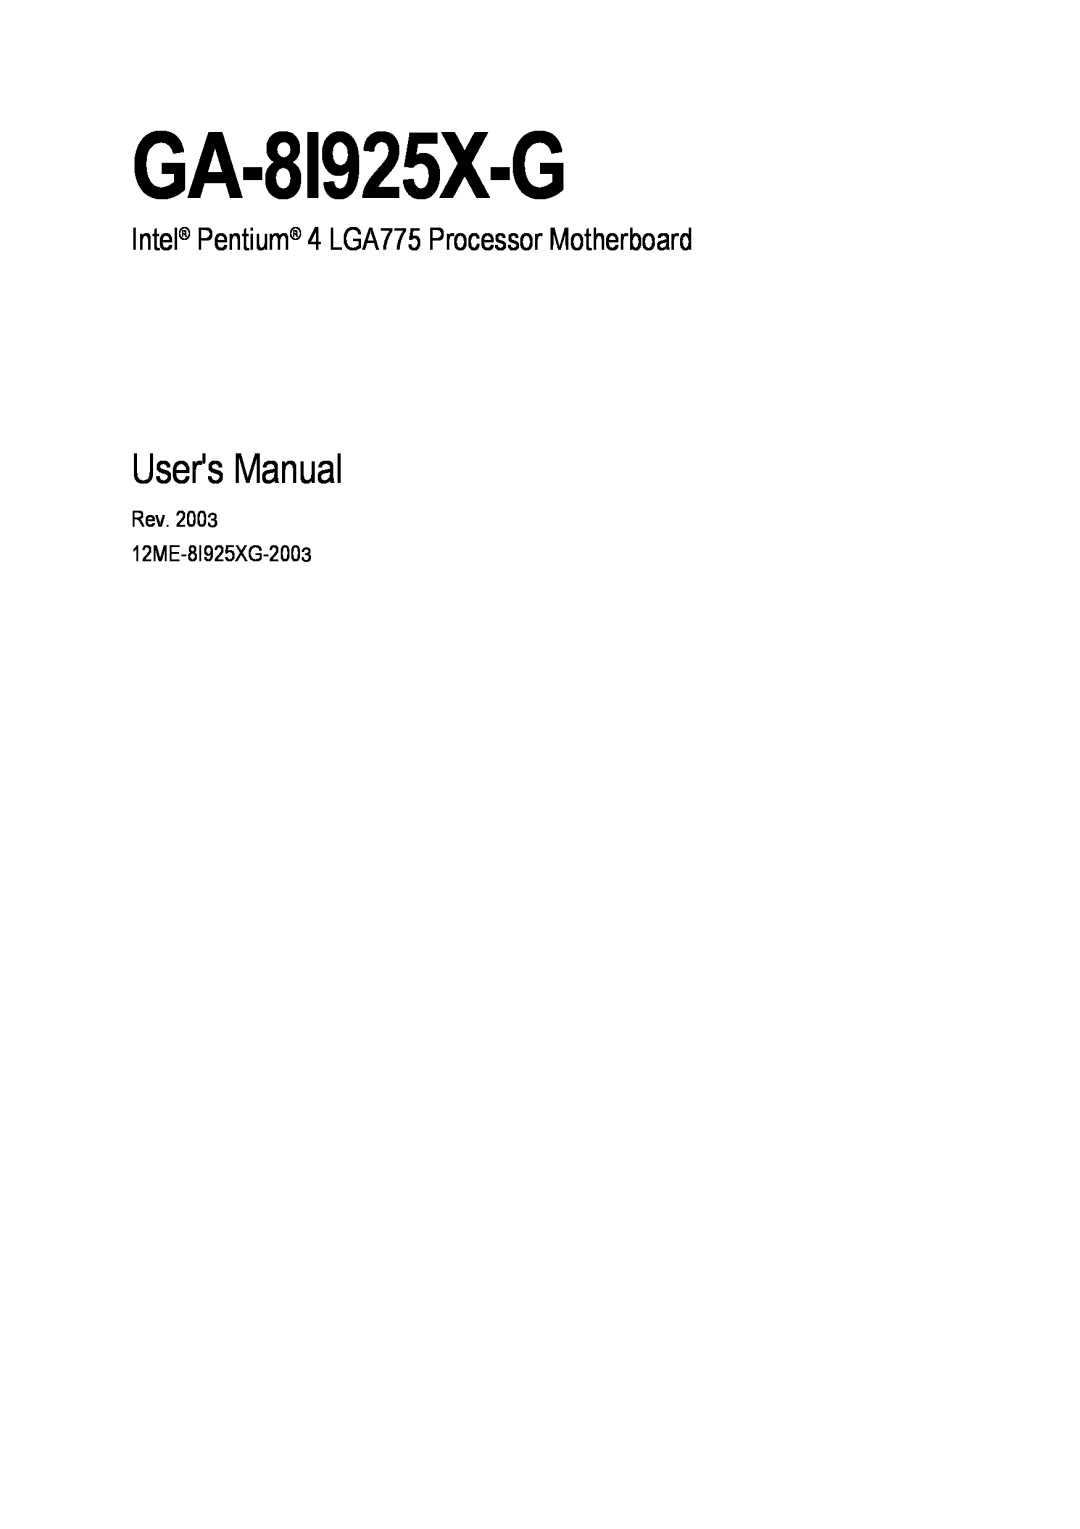 Gigabyte GA-8I925X-G user manual Users Manual, Intel Pentium 4 LGA775 Processor Motherboard 